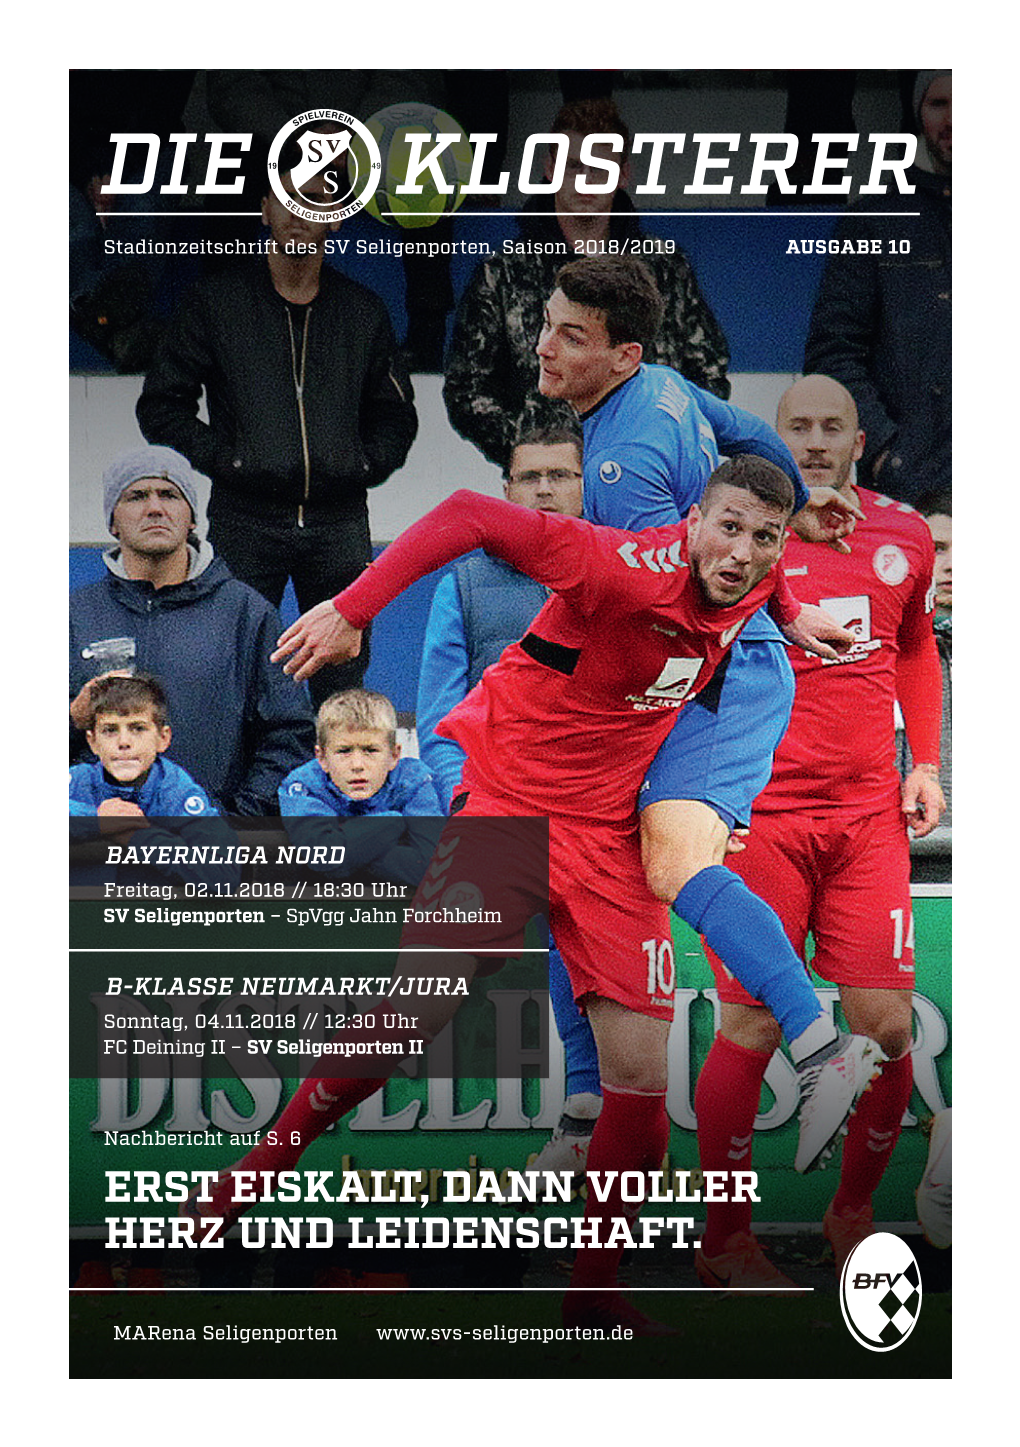 DIE KLOSTERER Stadionzeitschrift Des SV Seligenporten, Saison 2018/2019 AUSGABE 10